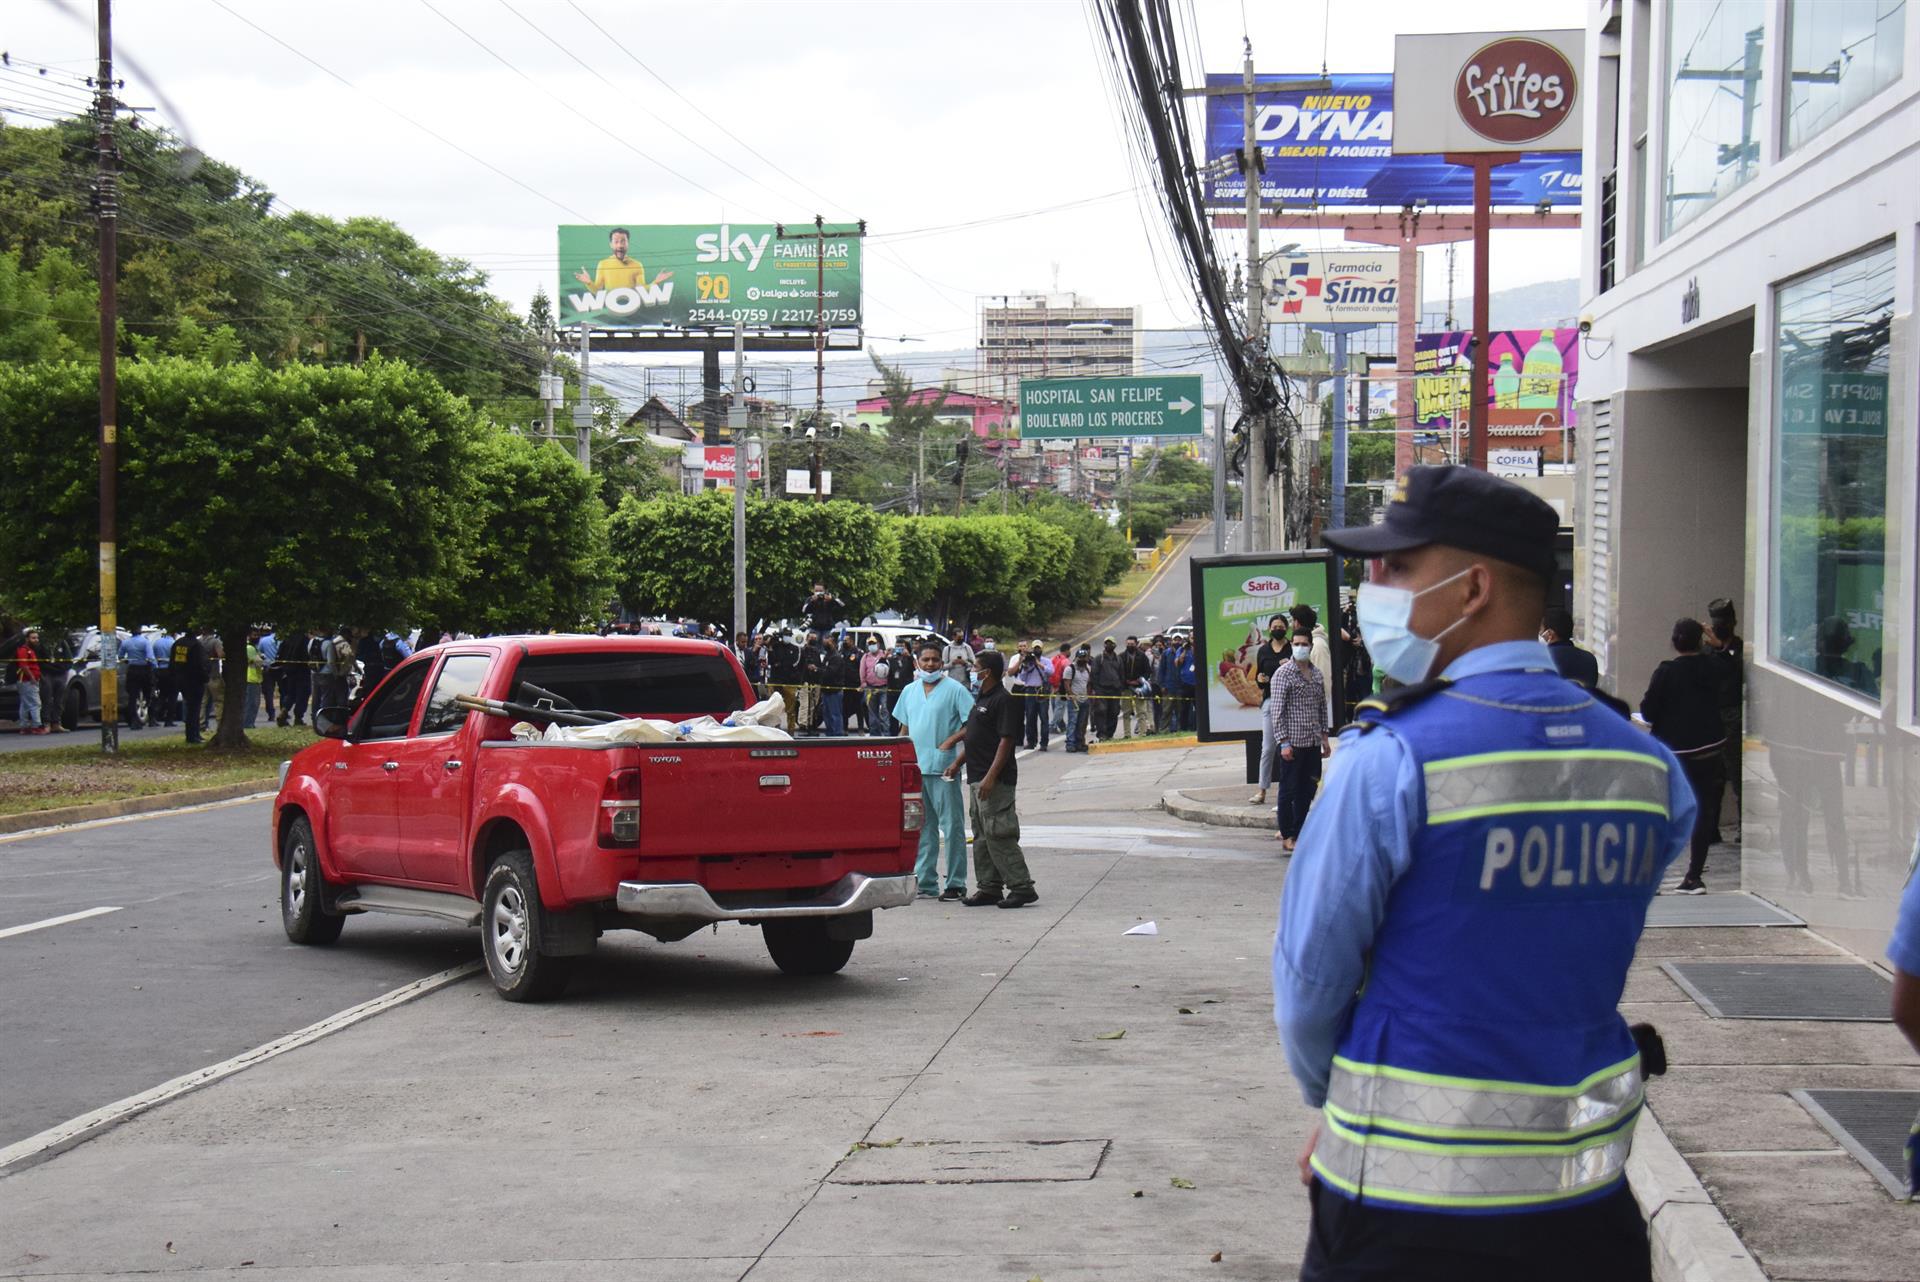 Policías y expertos forenses realizan el levantamiento de cuatro personas asesinadas en la madrugada de hoy, a la salida del estacionamiento de un edificio donde funcionan locales comerciales y residenciales, en Tegucigalpa (Honduras).